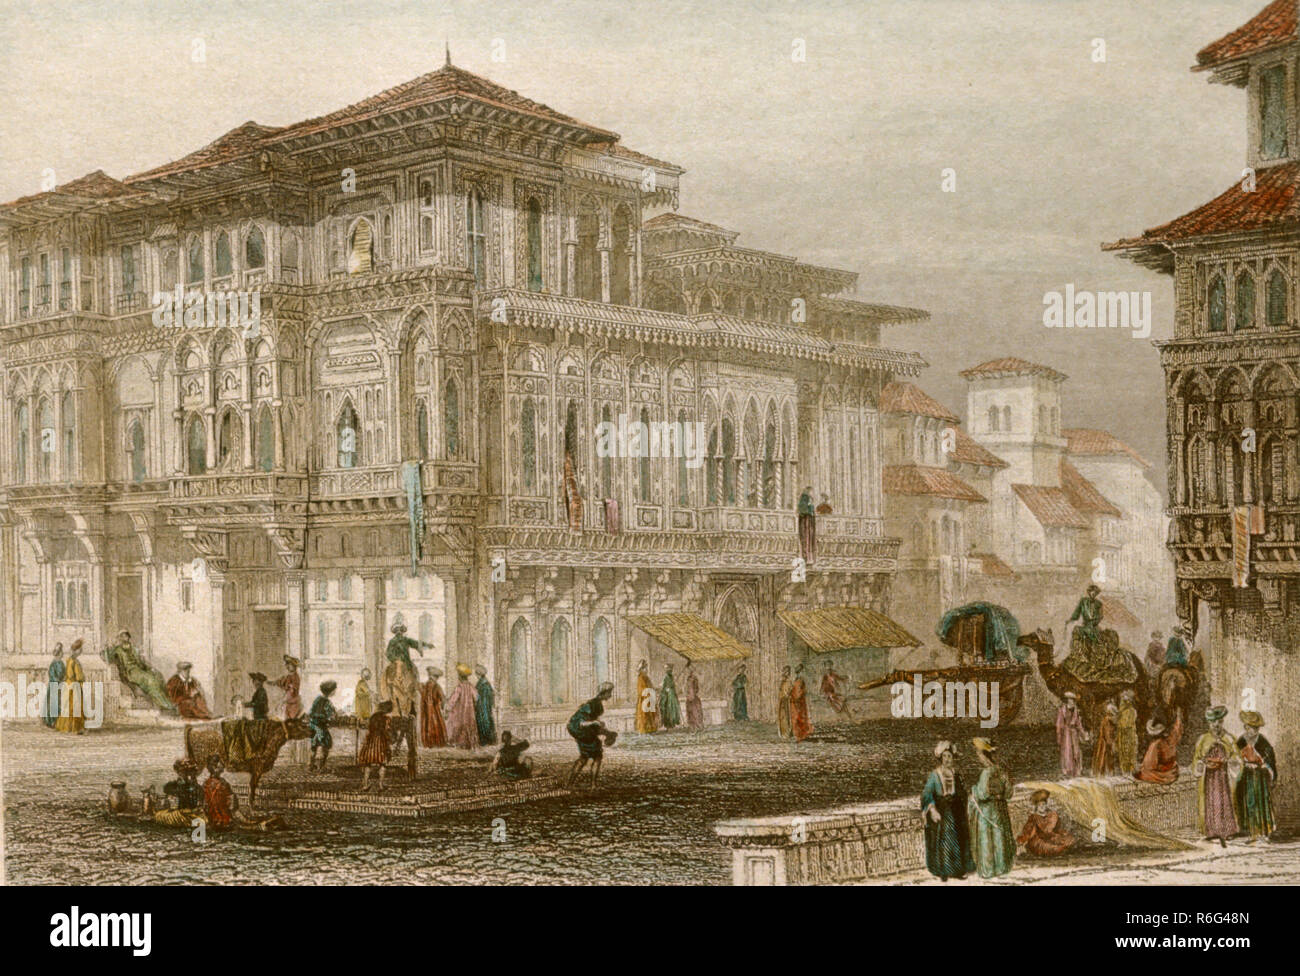 Pittura colorata a mano della città vecchia, India, Asia, vecchia litografia del 1800 d'annata Foto Stock